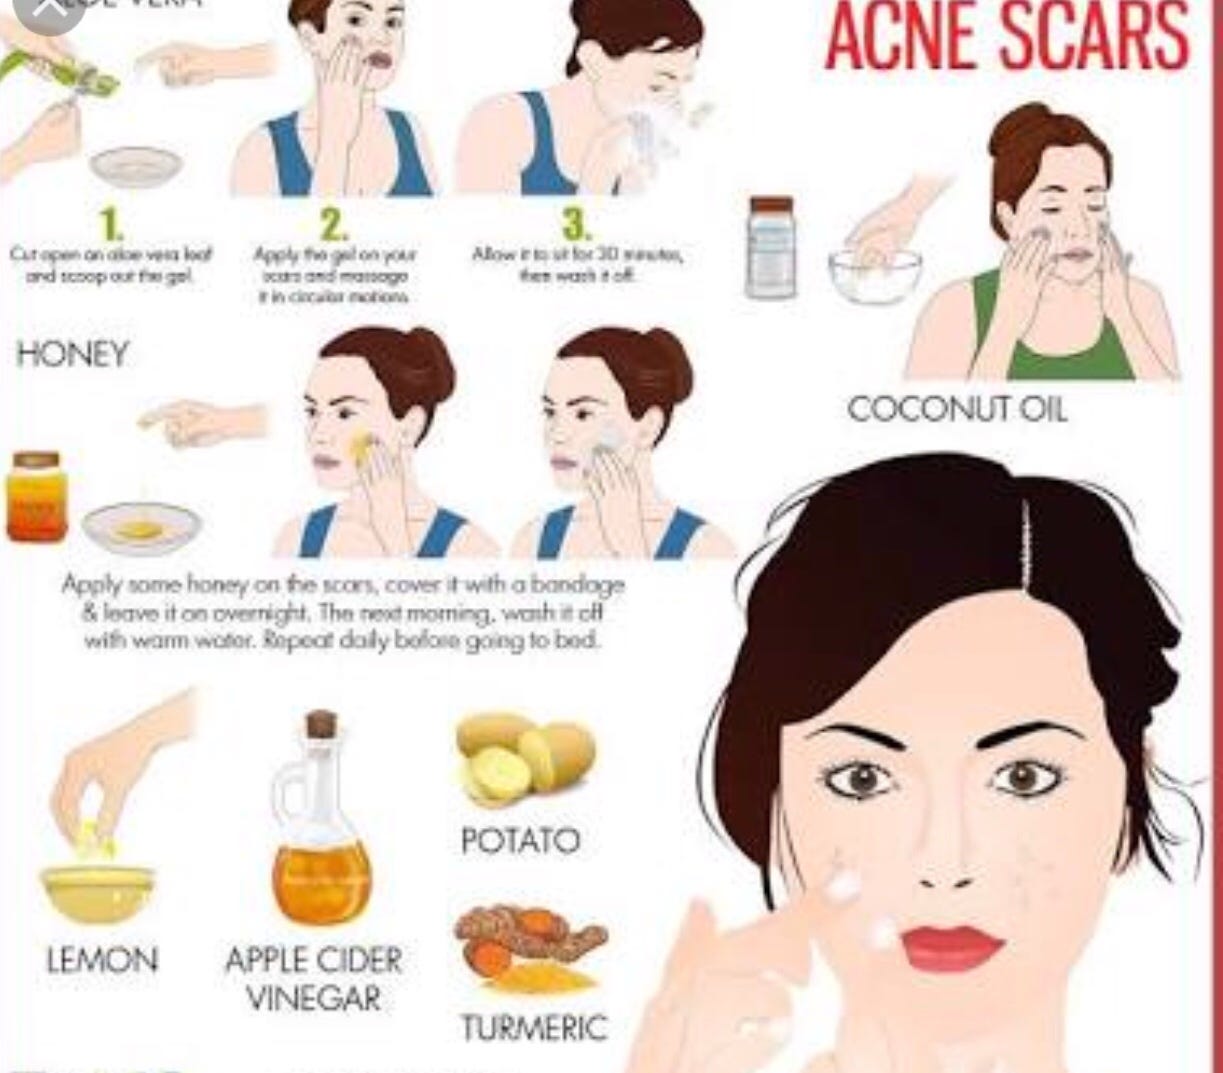 aloe per acne